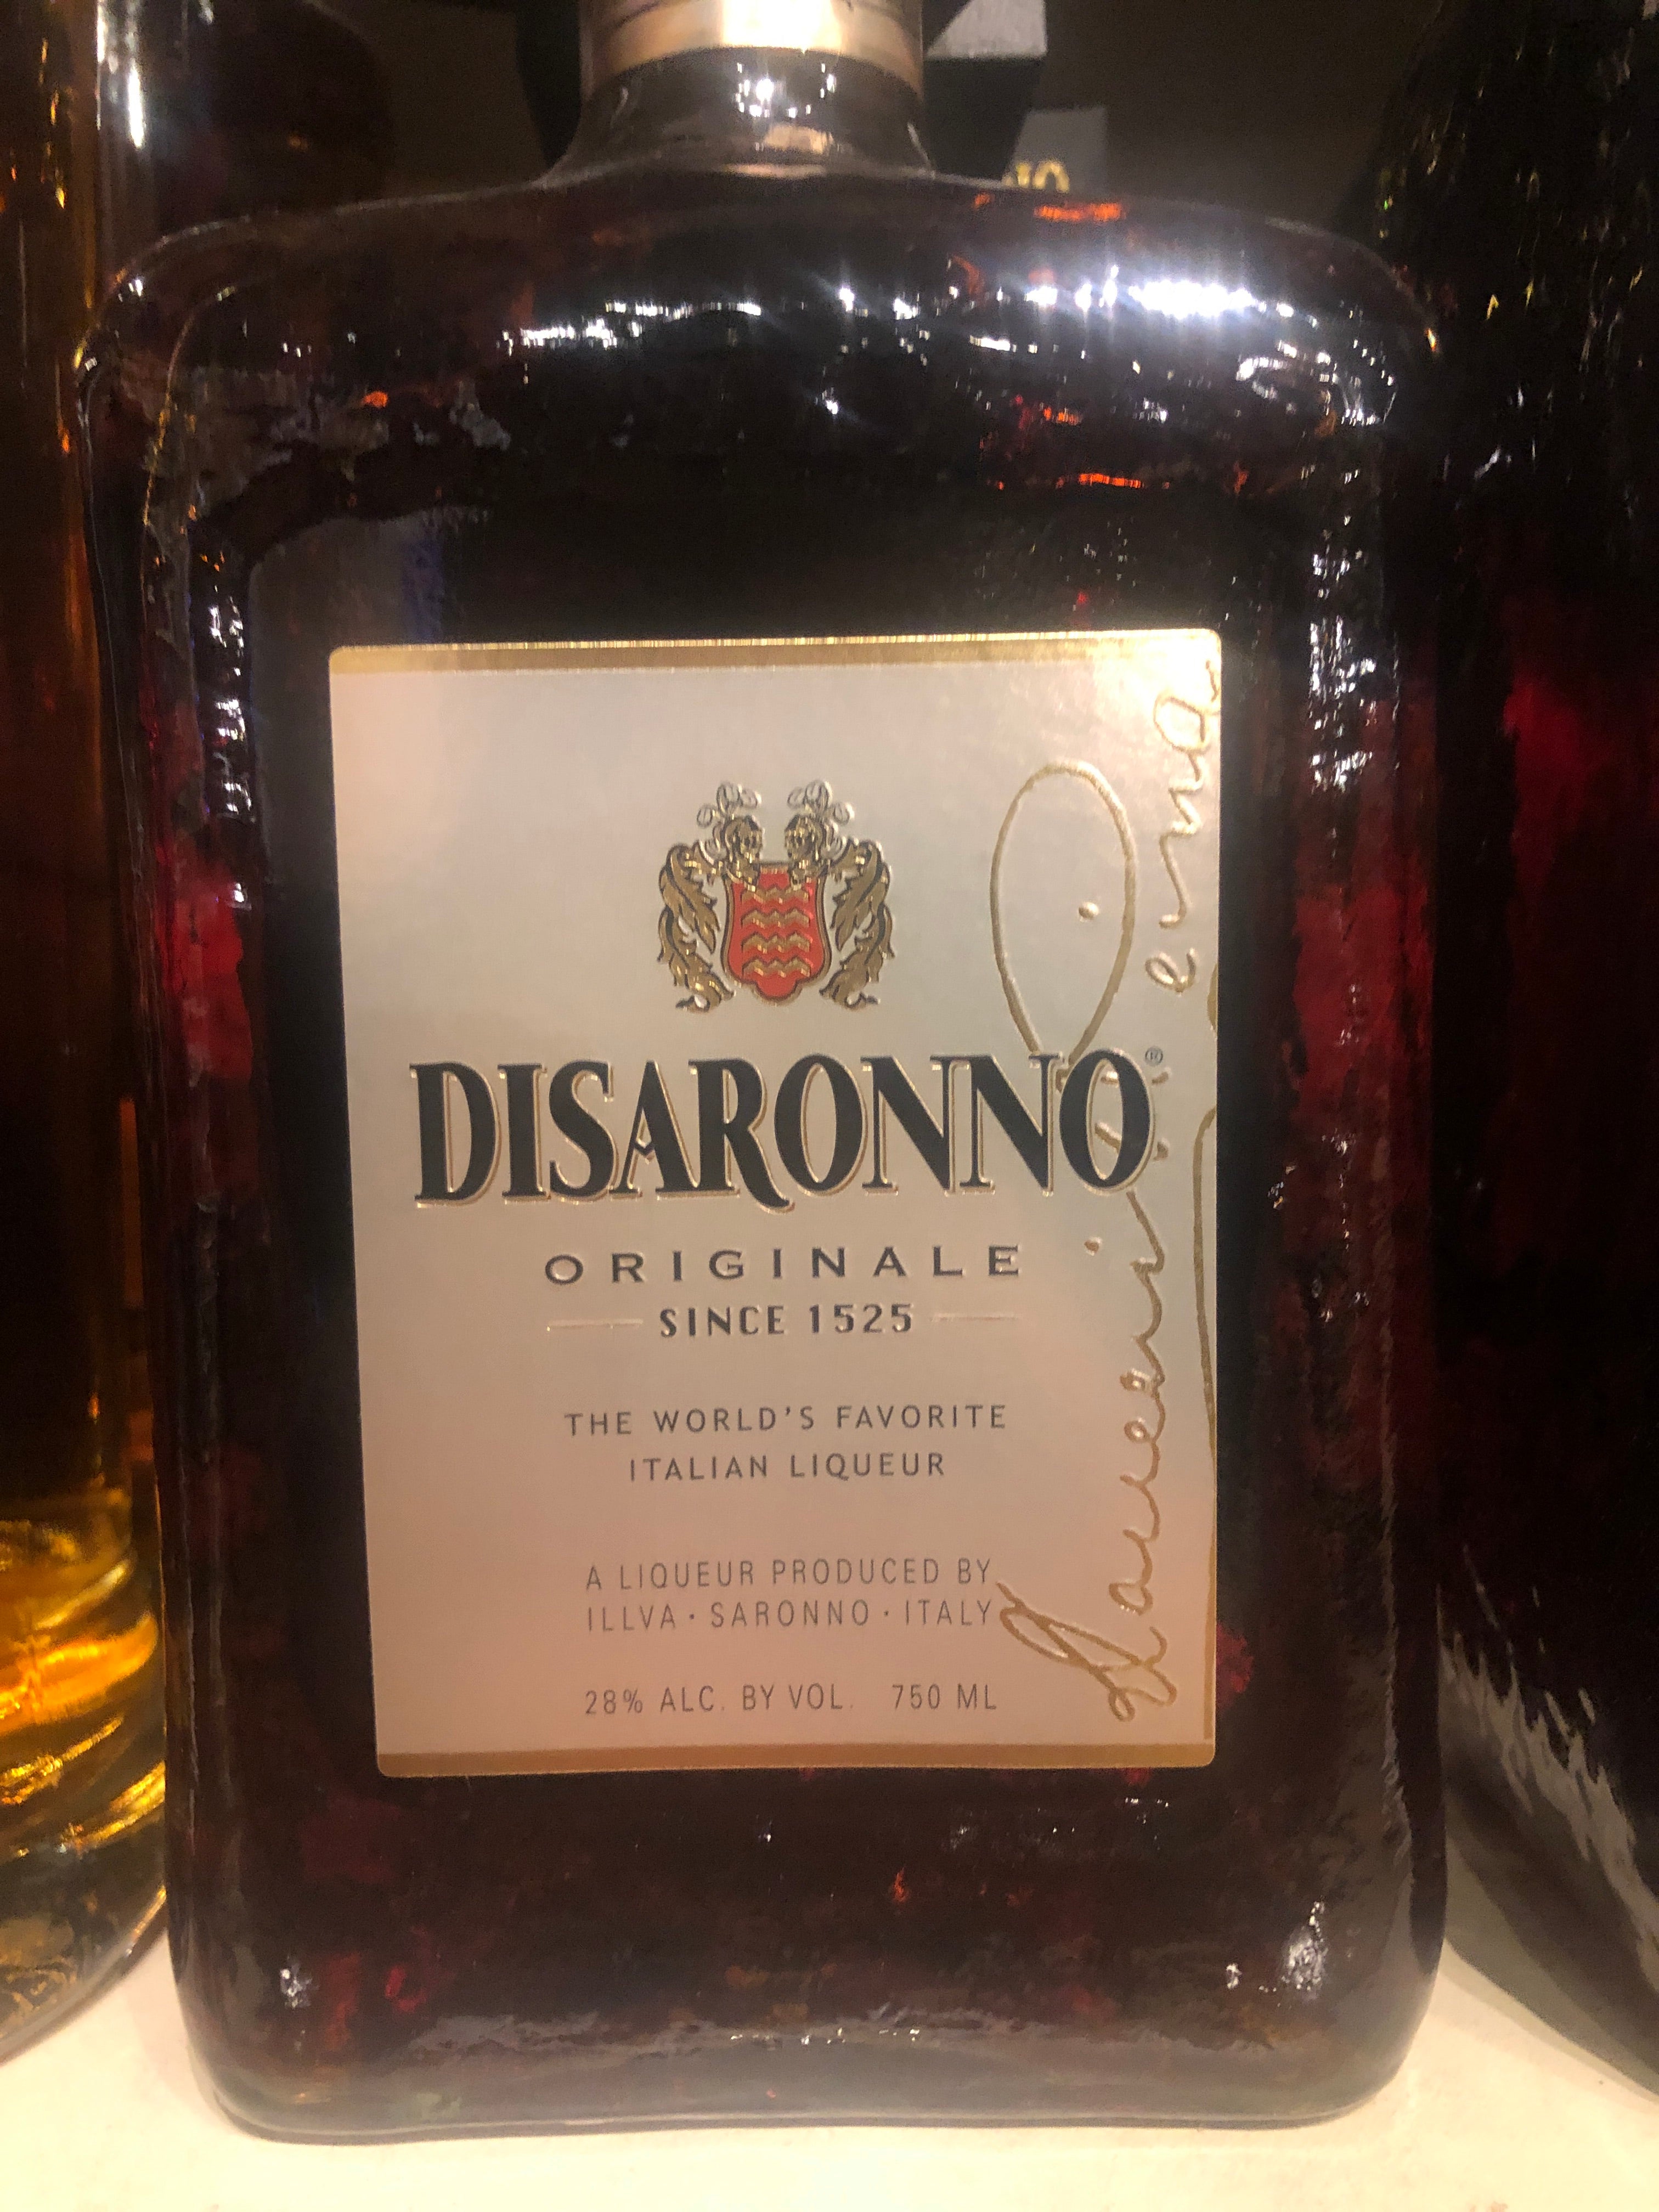 Buy Disaronno Amaretto 375ml | Quality Liquor Store